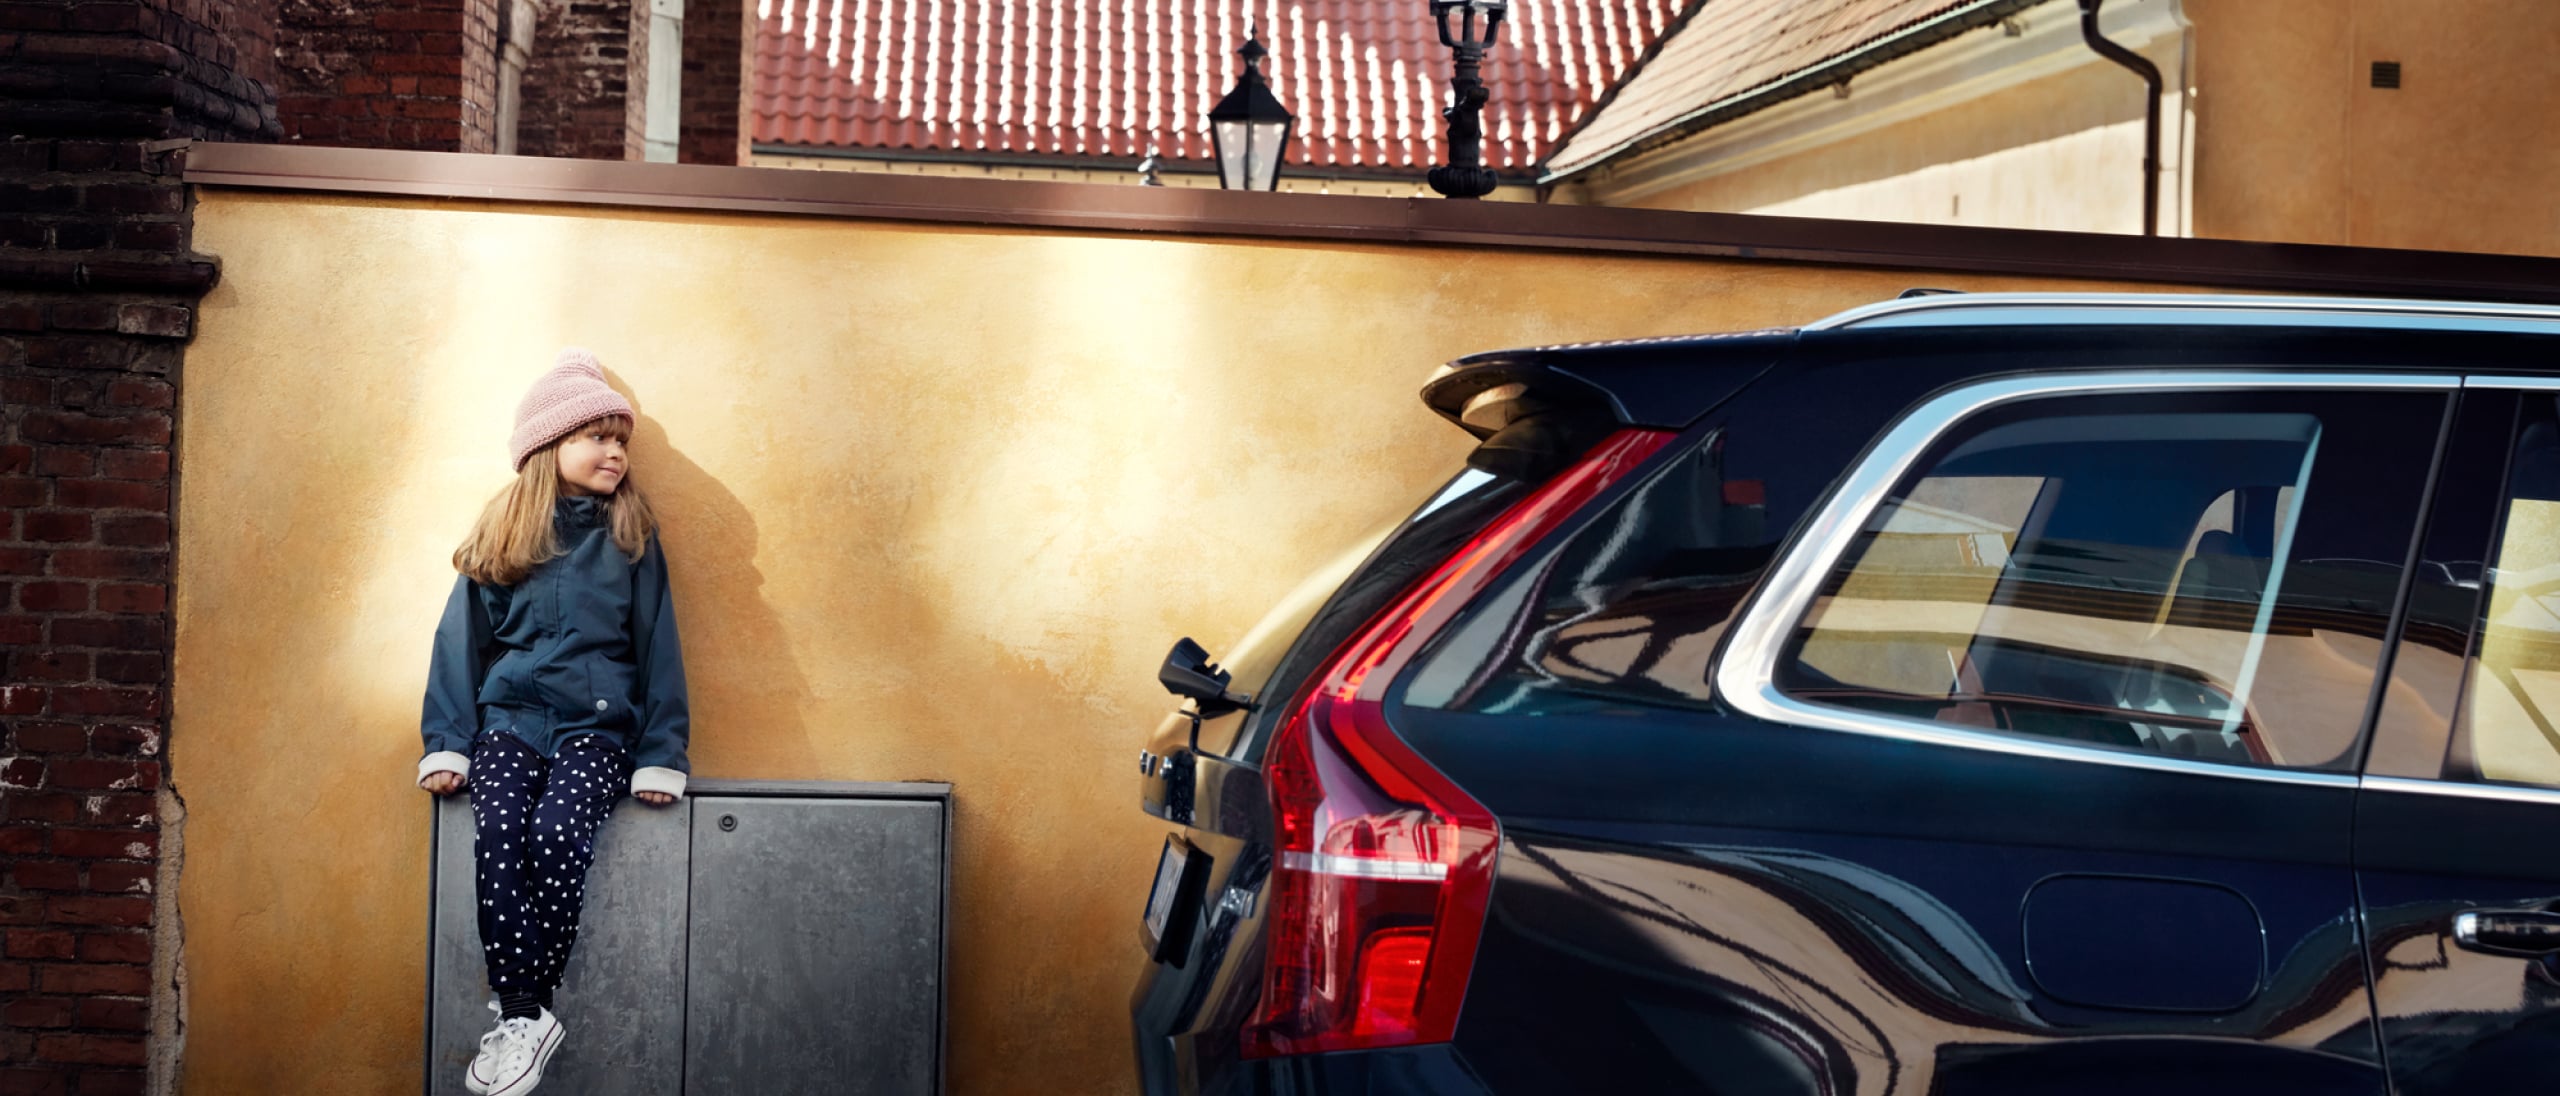 Et barn sidder lænet op ad en væg med en sort Volvo parkeret ved siden af.